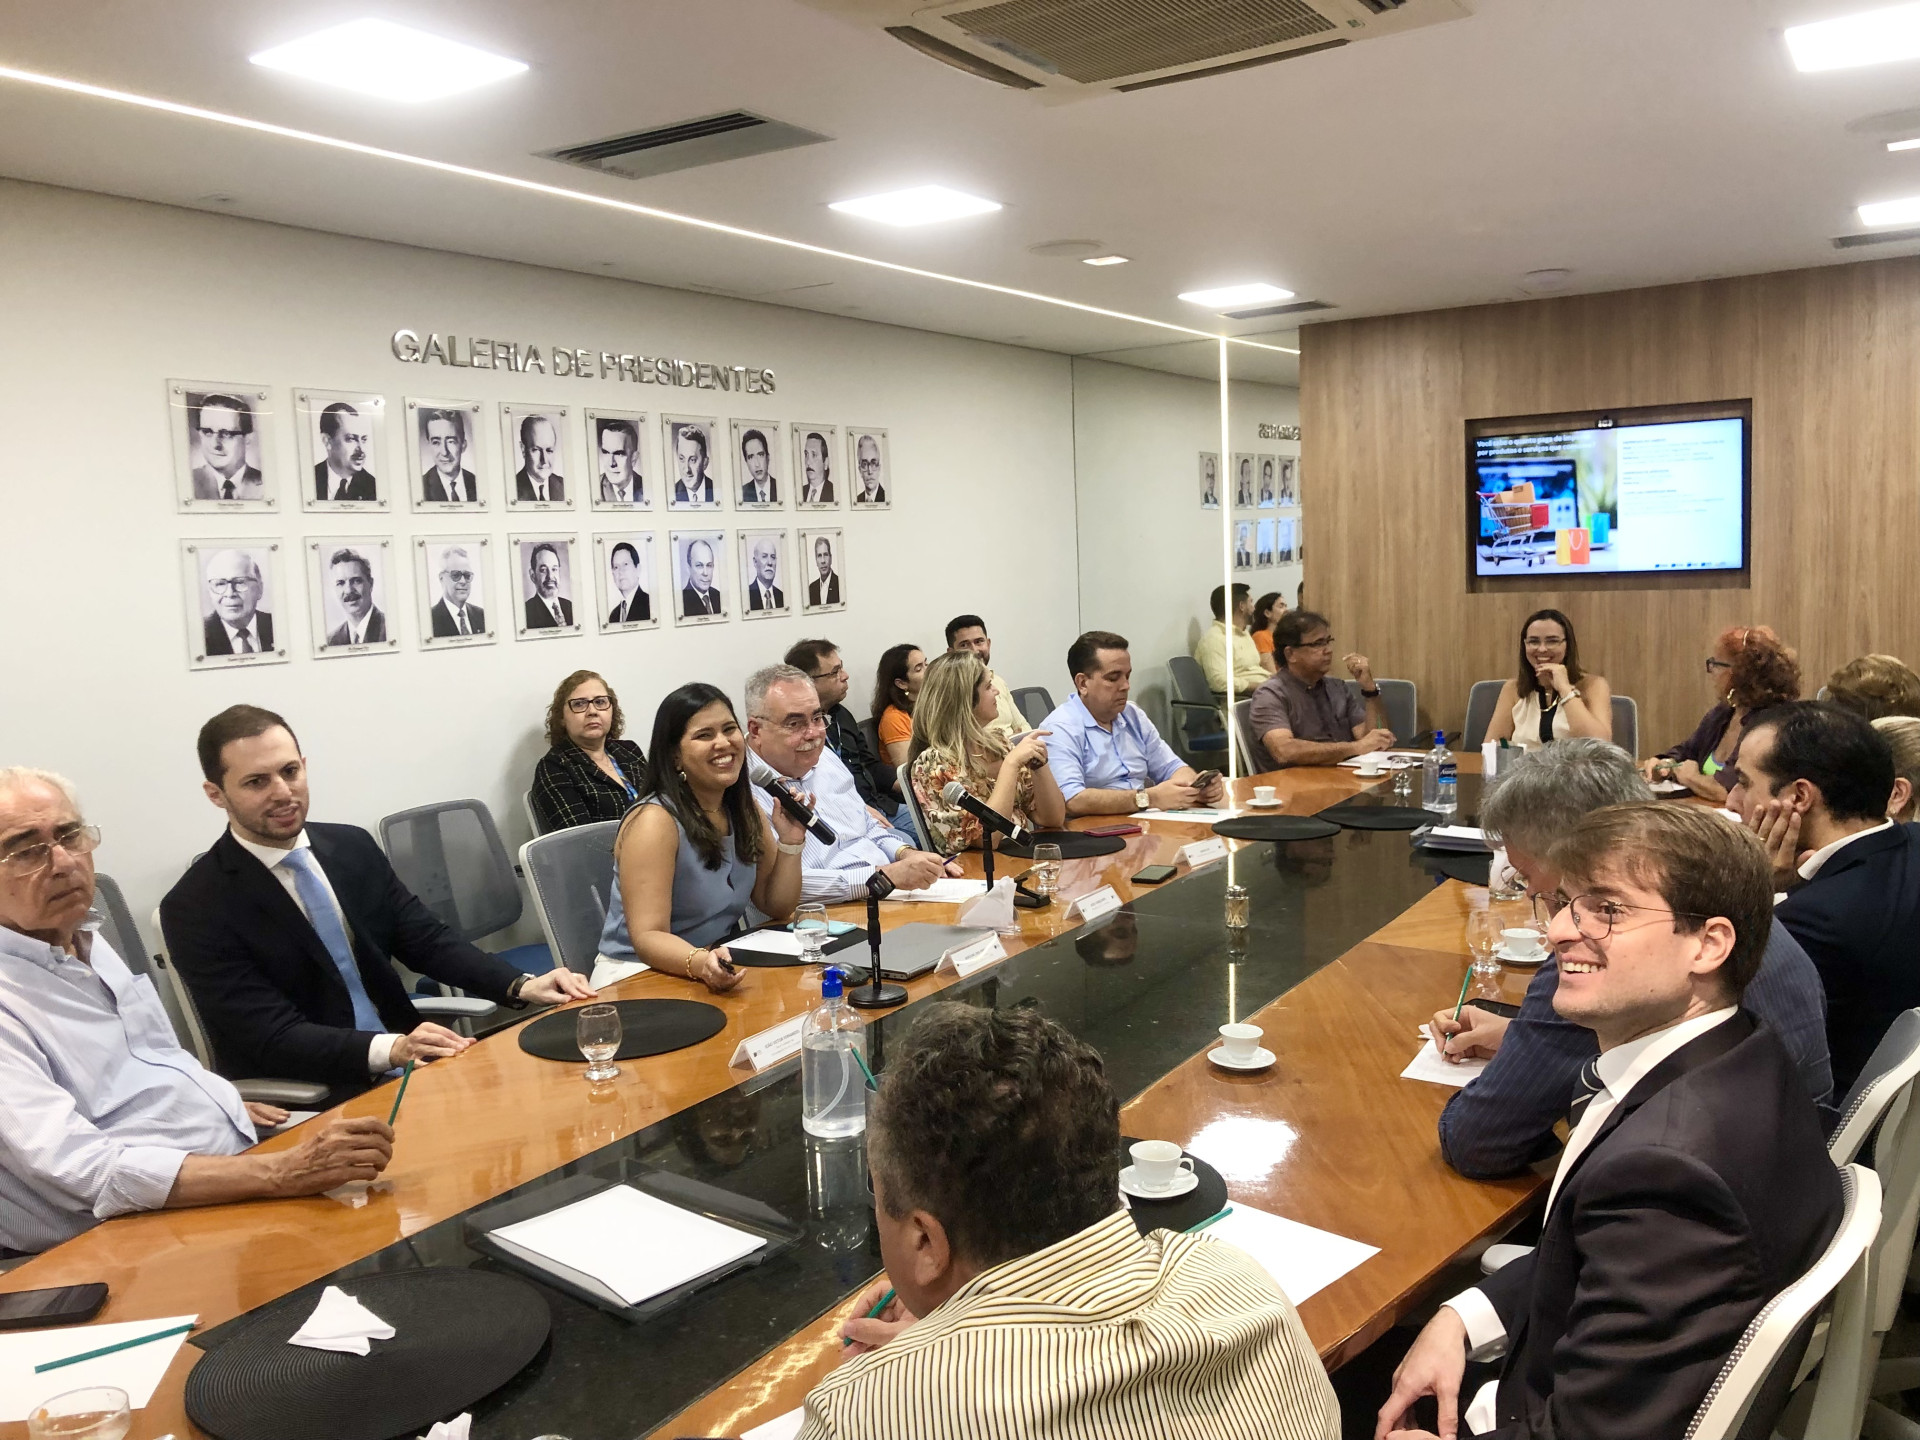 ￼TEMAS da reforma tributária foram debatidos em evento na Câmara de Dirigentes Lojistas (CDL), em Fortaleza, ontem, 22. (Foto: Ana Luiza Serrão)